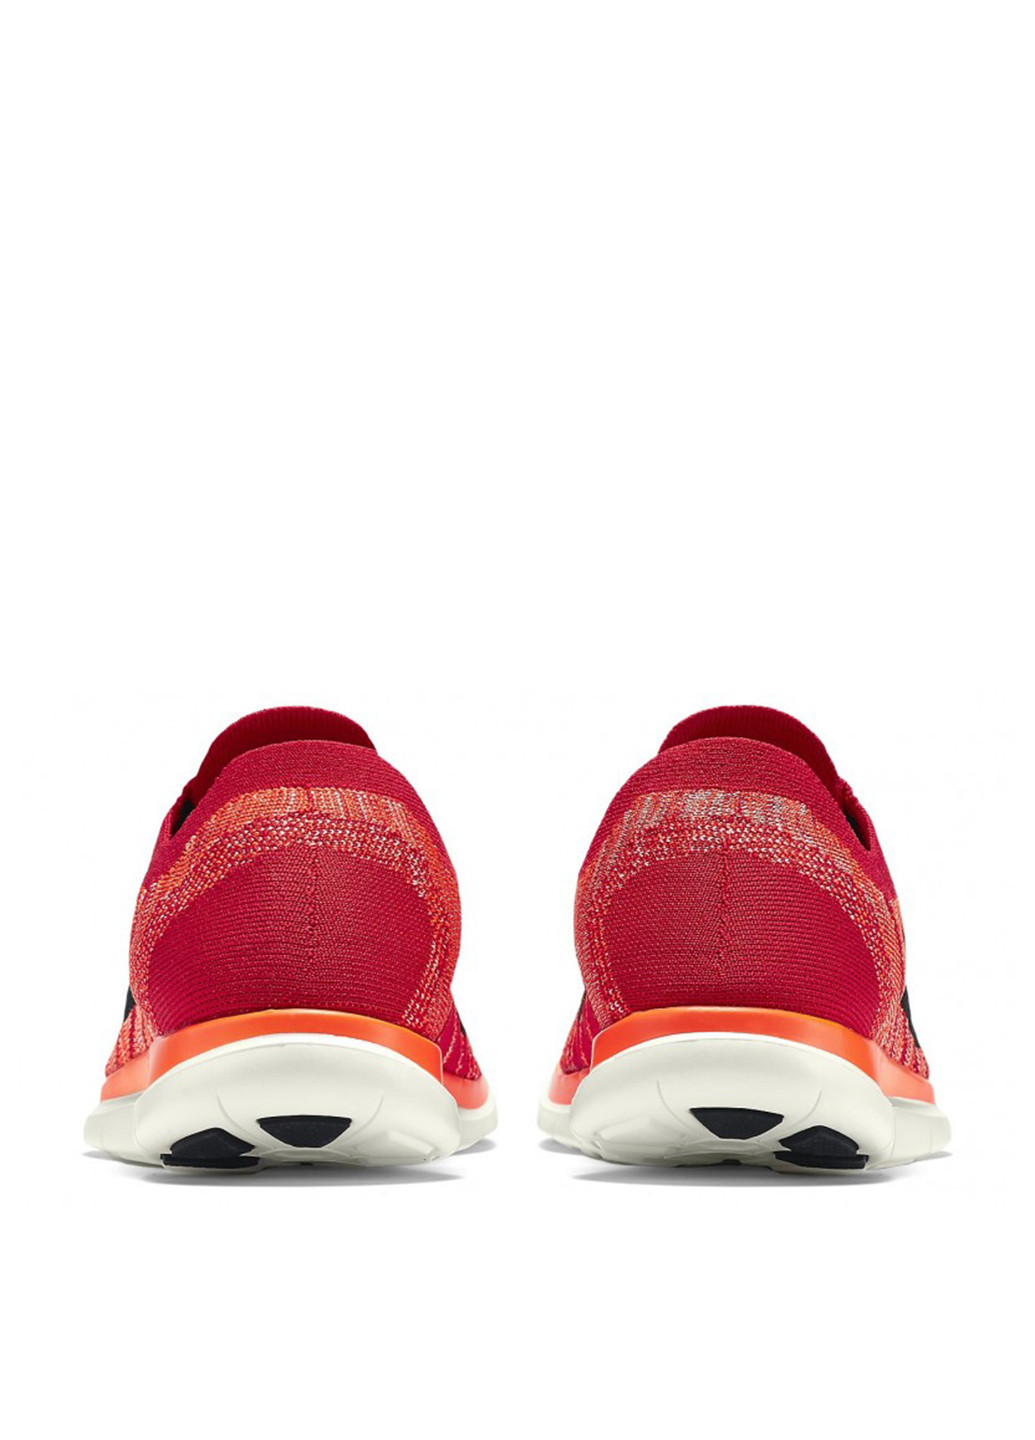 Красные демисезонные кроссовки Nike Free 4.0 Flyknit